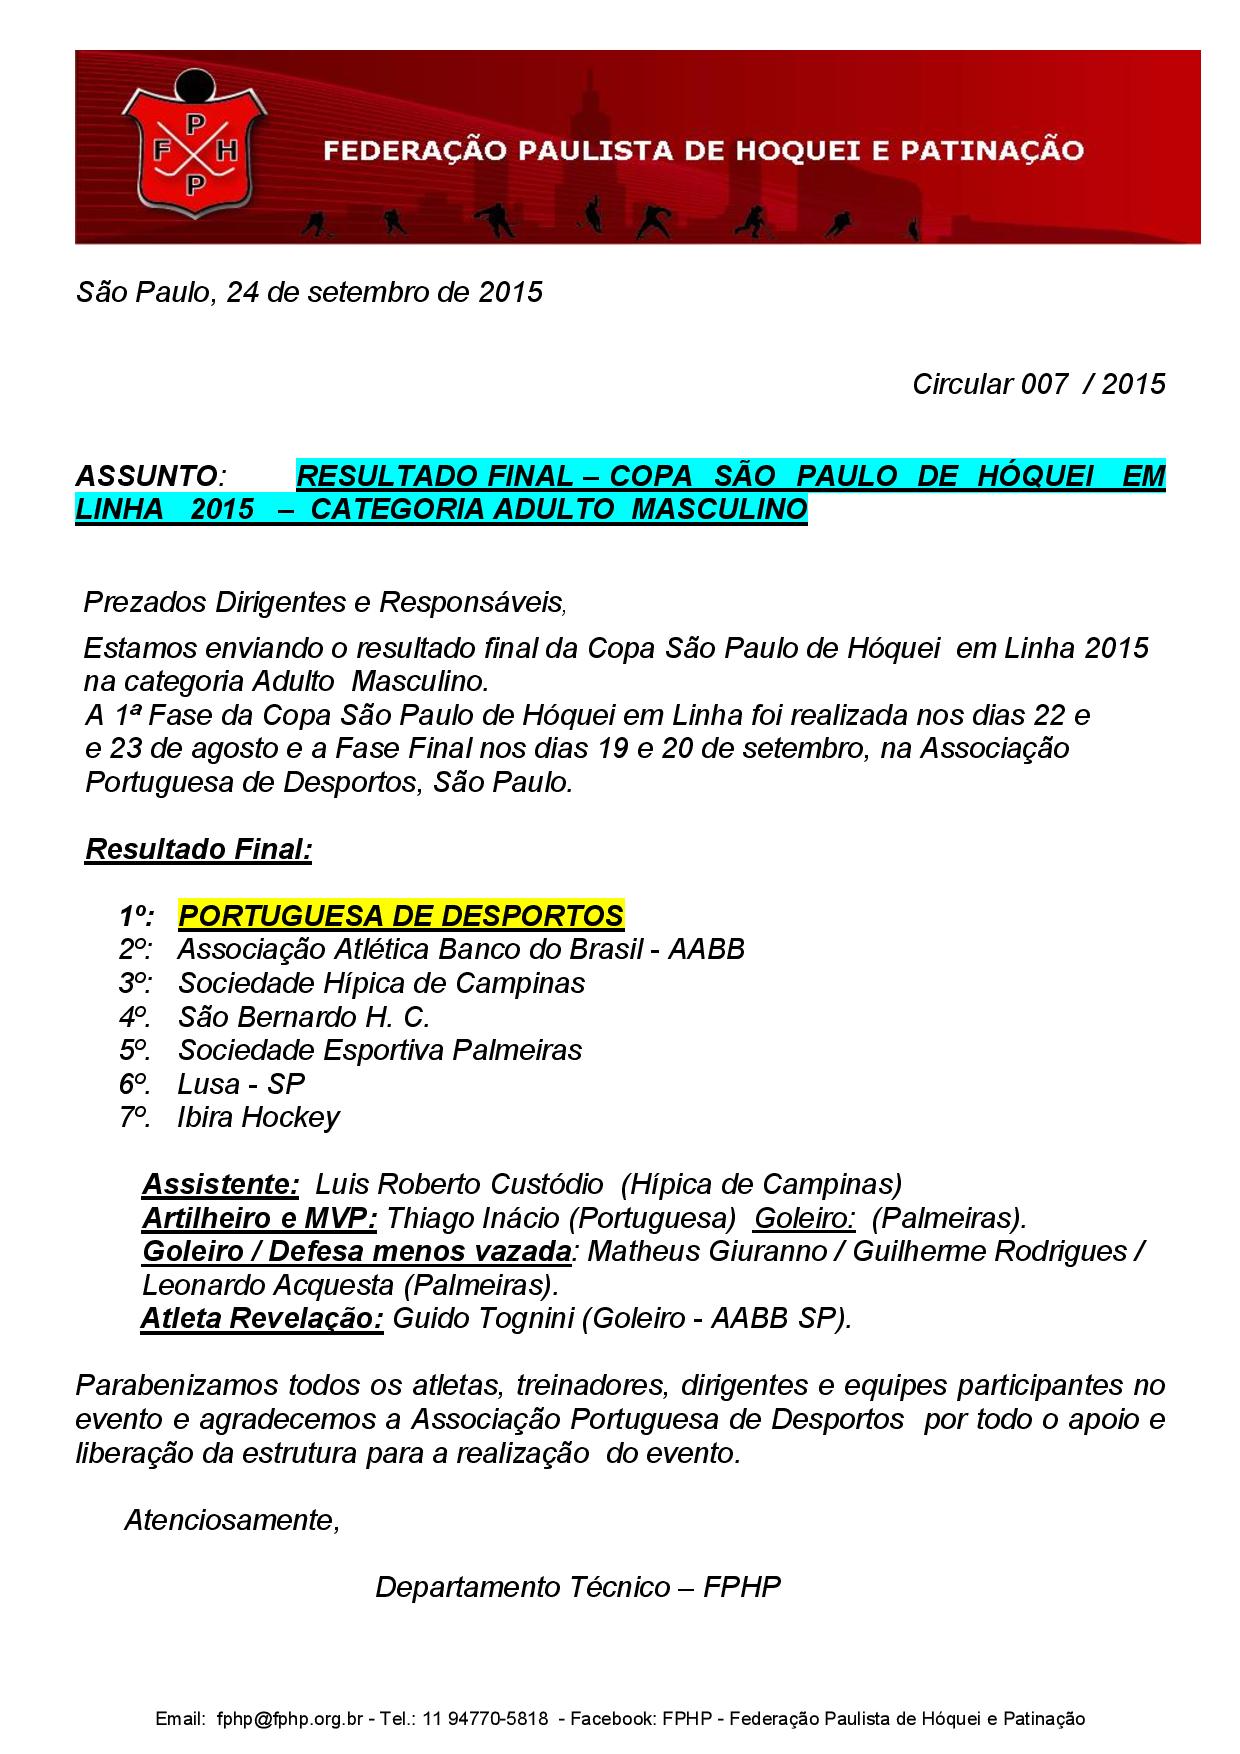 FPHP - Circular 007 - Resultado Final - Copa Sao Paulo 2015 - Categoria Adulto-page-001